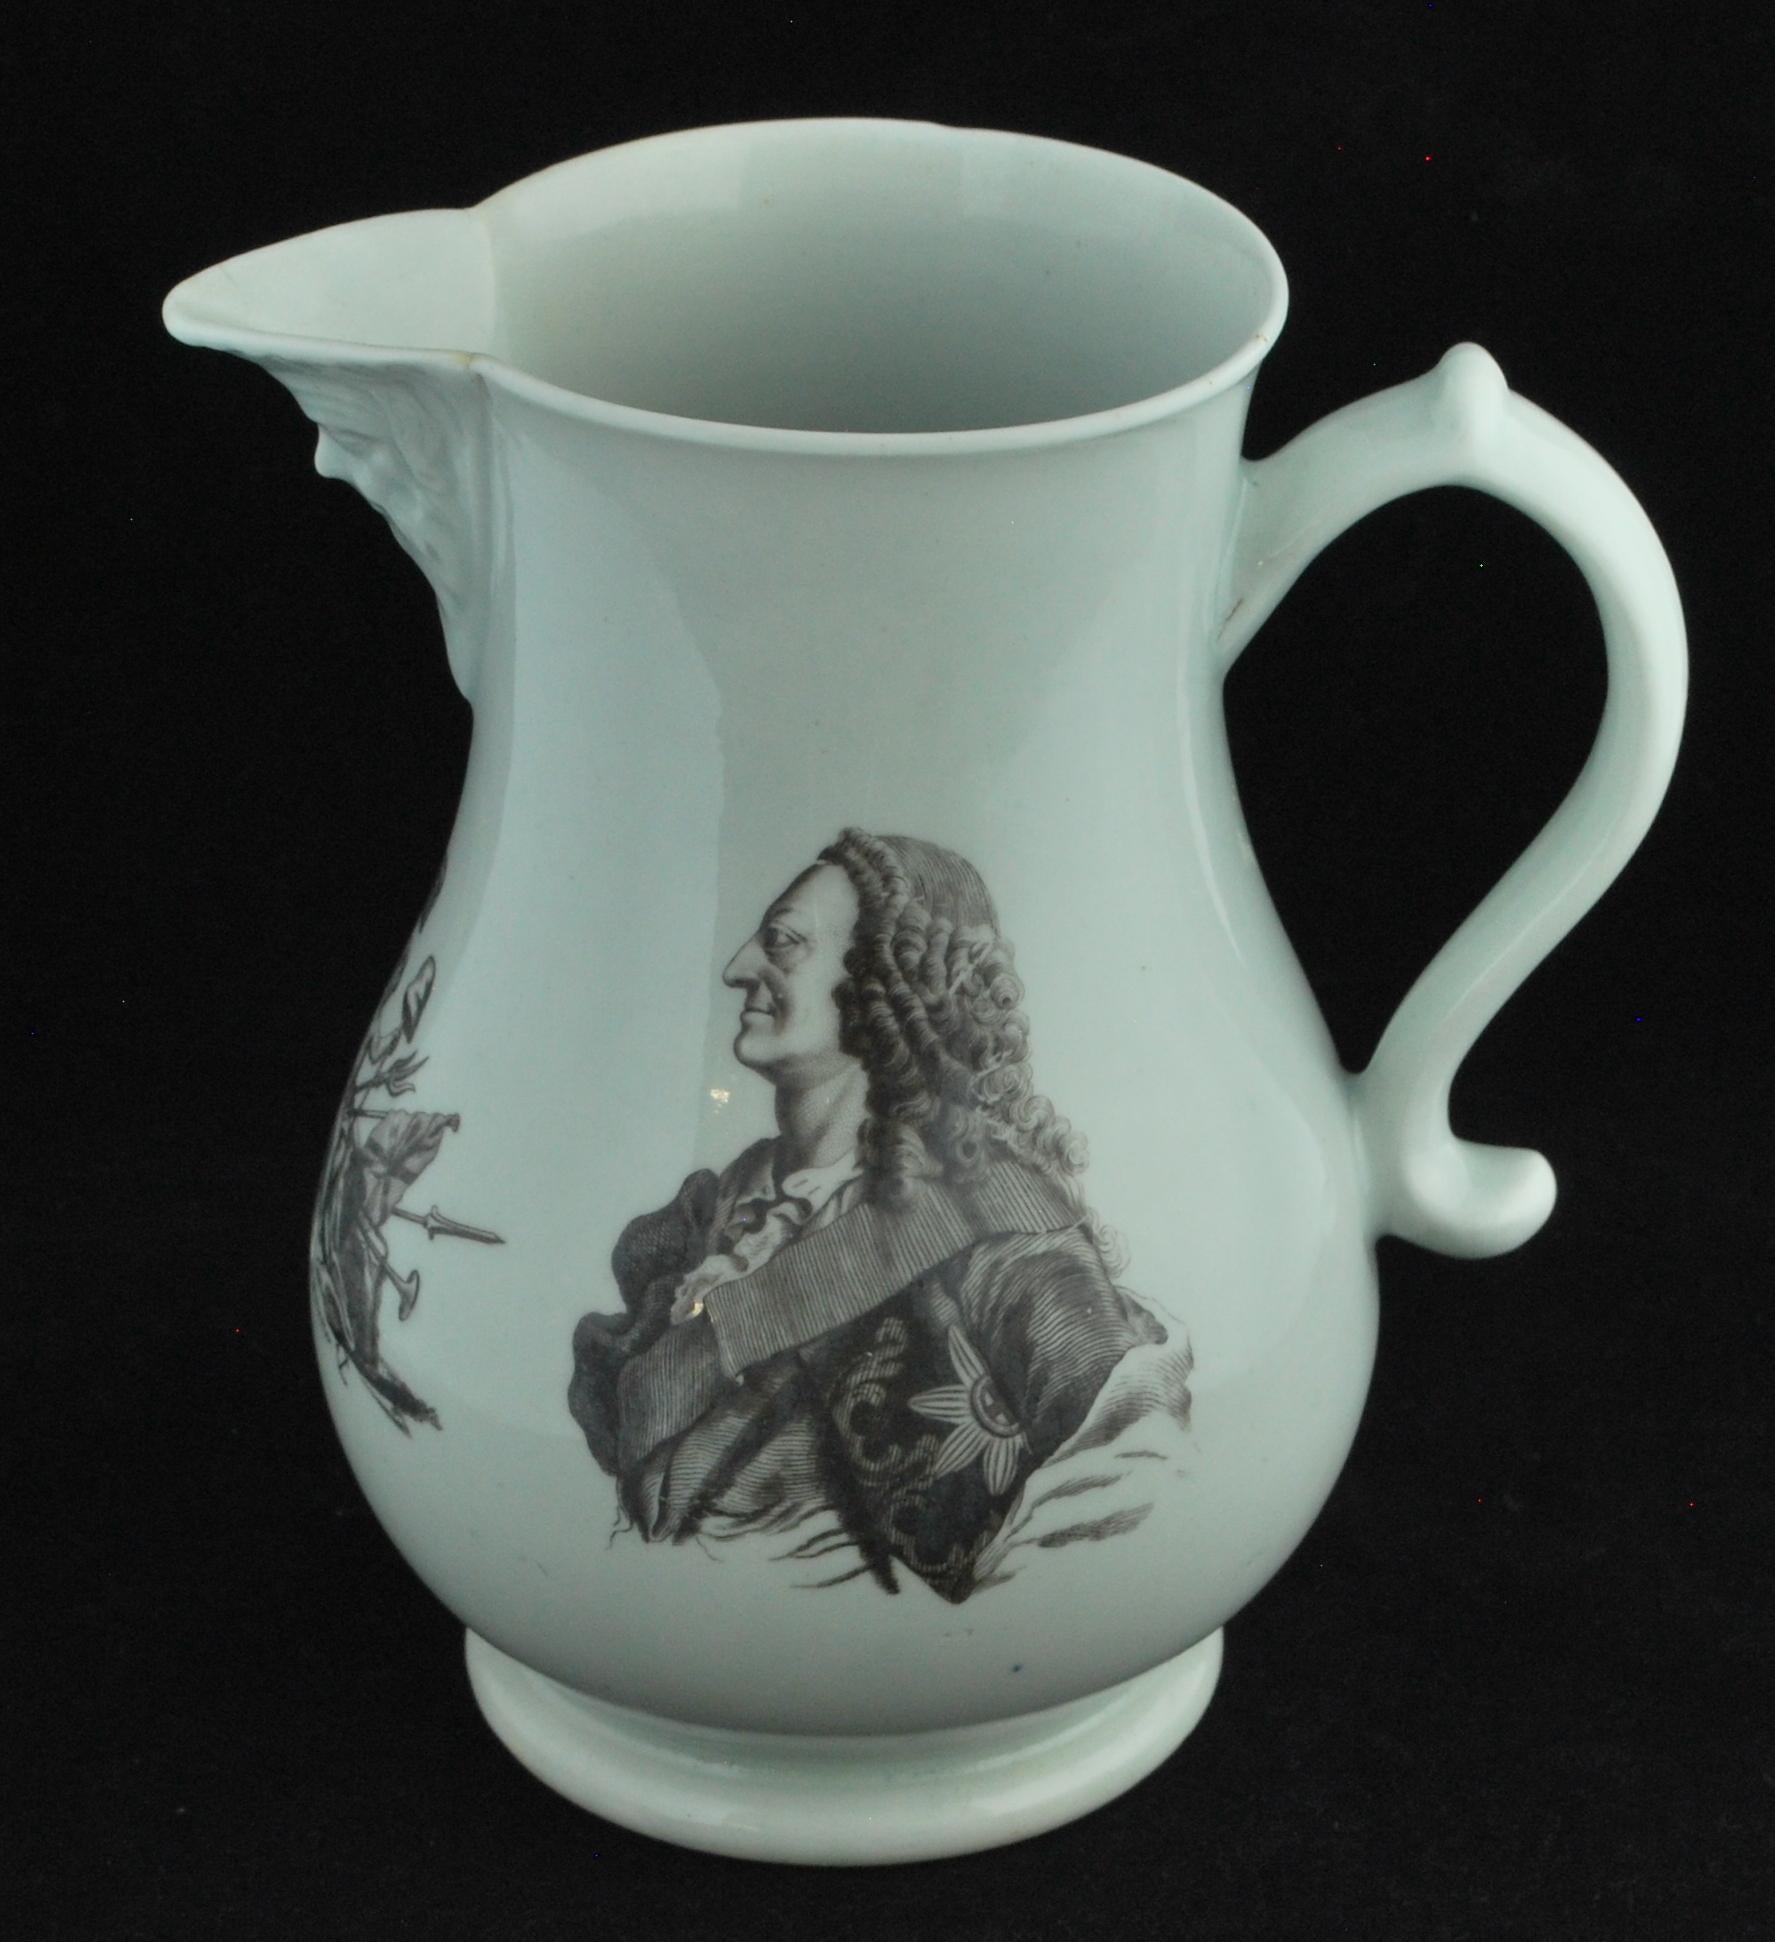 Une impression inhabituelle, que l'on voit parfois sur des mugs ; il est exceptionnellement rare de la trouver sur un pichet. Le roi George II est mort en 1760, et les commémorations de Worcester le concernant sont donc rares. L'estampe commémore